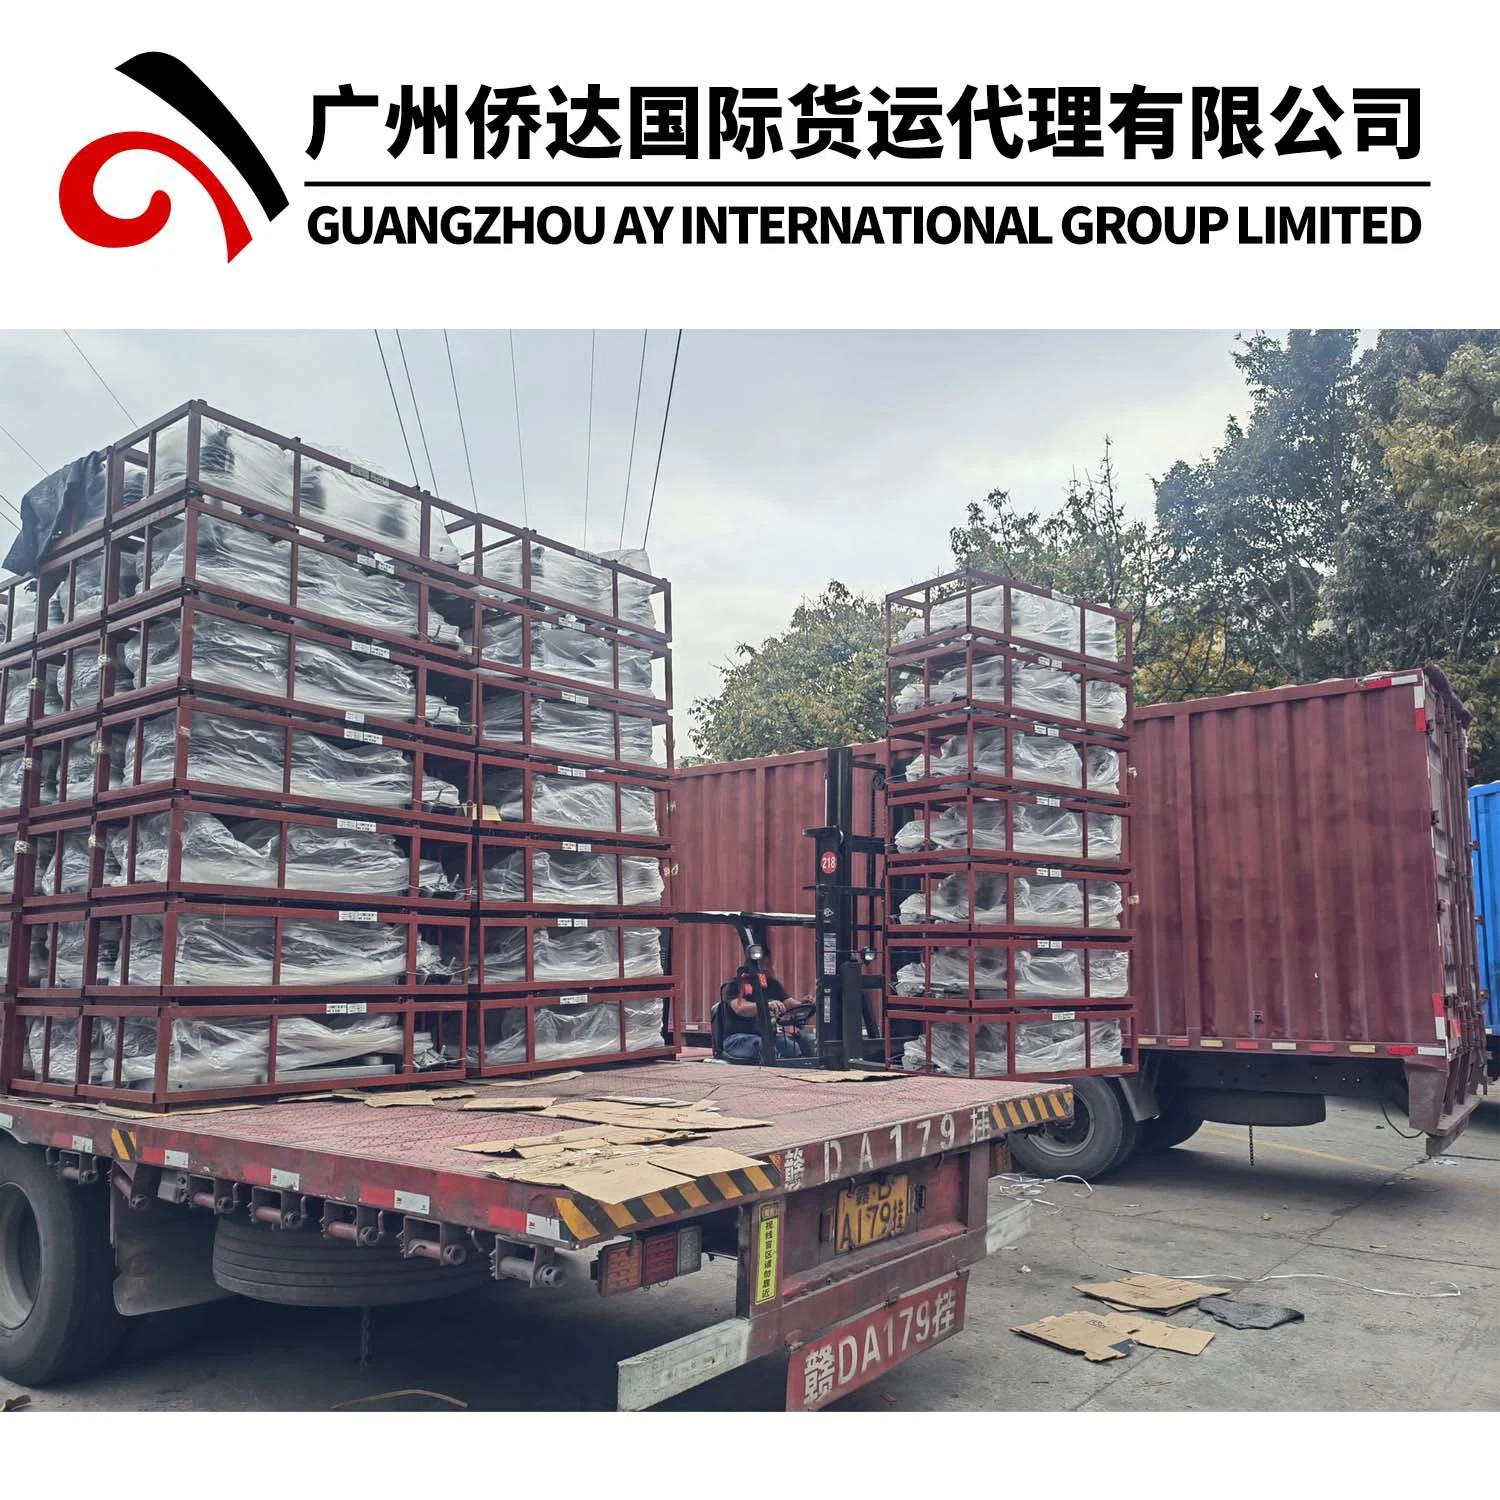 Warehousing & Consolidation Service in Guangzhou/Yiwu, China